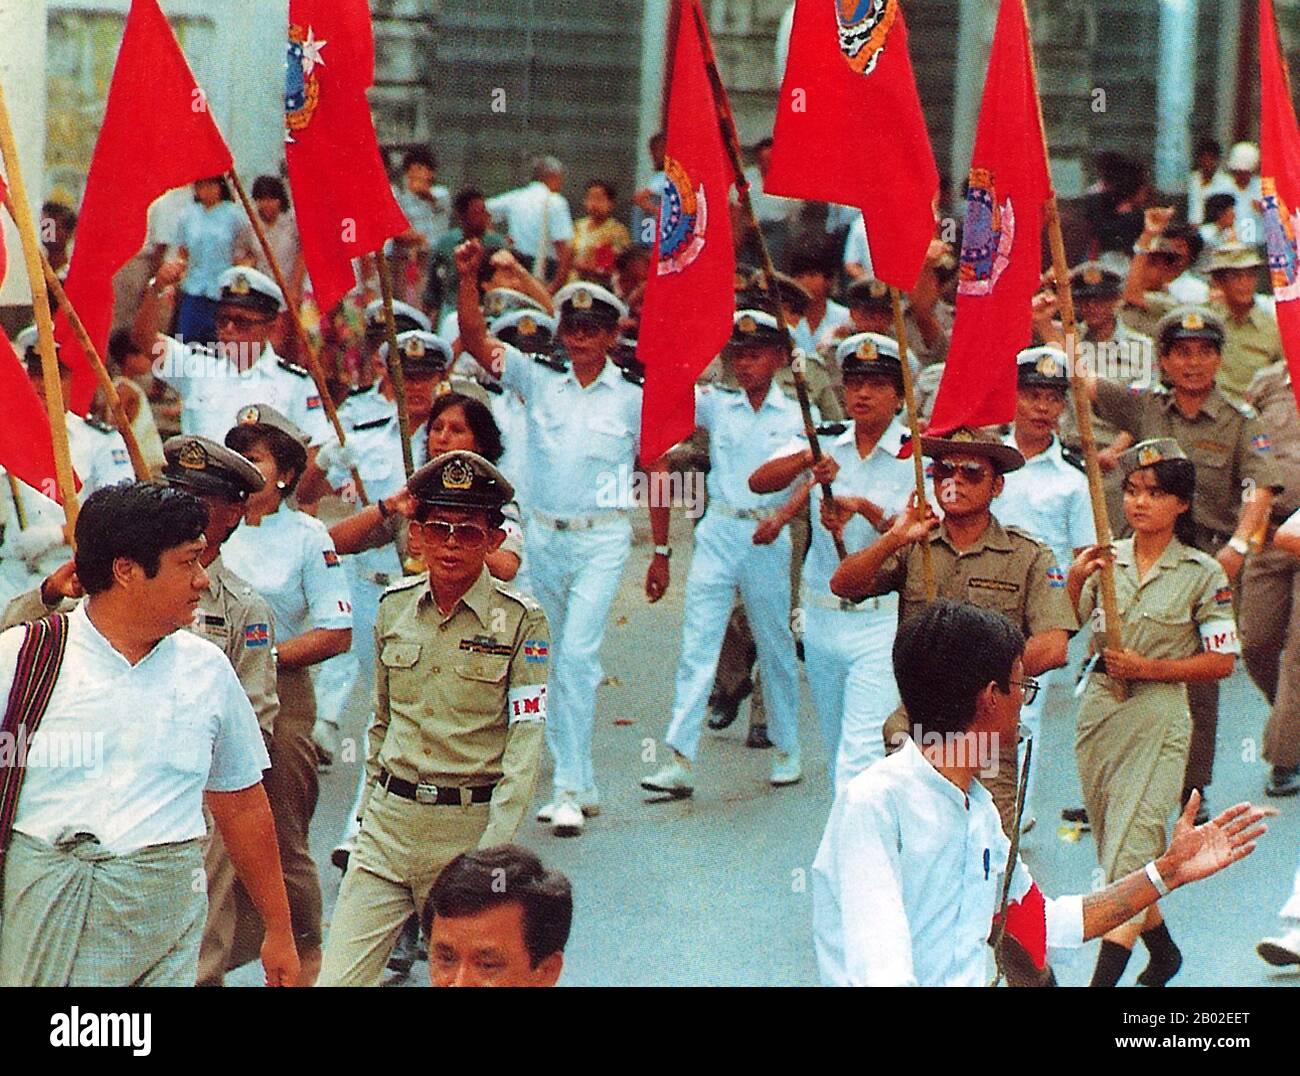 Les 8888 Manifestations Populaires pro-démocratie à l'échelle nationale (également connues sous le nom de soulèvement Du pouvoir Populaire) ont été une série de marches, manifestations, manifestations et émeutes en République socialiste de l'Union de Birmanie (aujourd'hui connue sous le nom de Birmanie ou Myanmar). Des événements clés ont eu lieu le 8 août 1988, et c'est donc ce qu'on appelle le soulèvement 8888. Banque D'Images